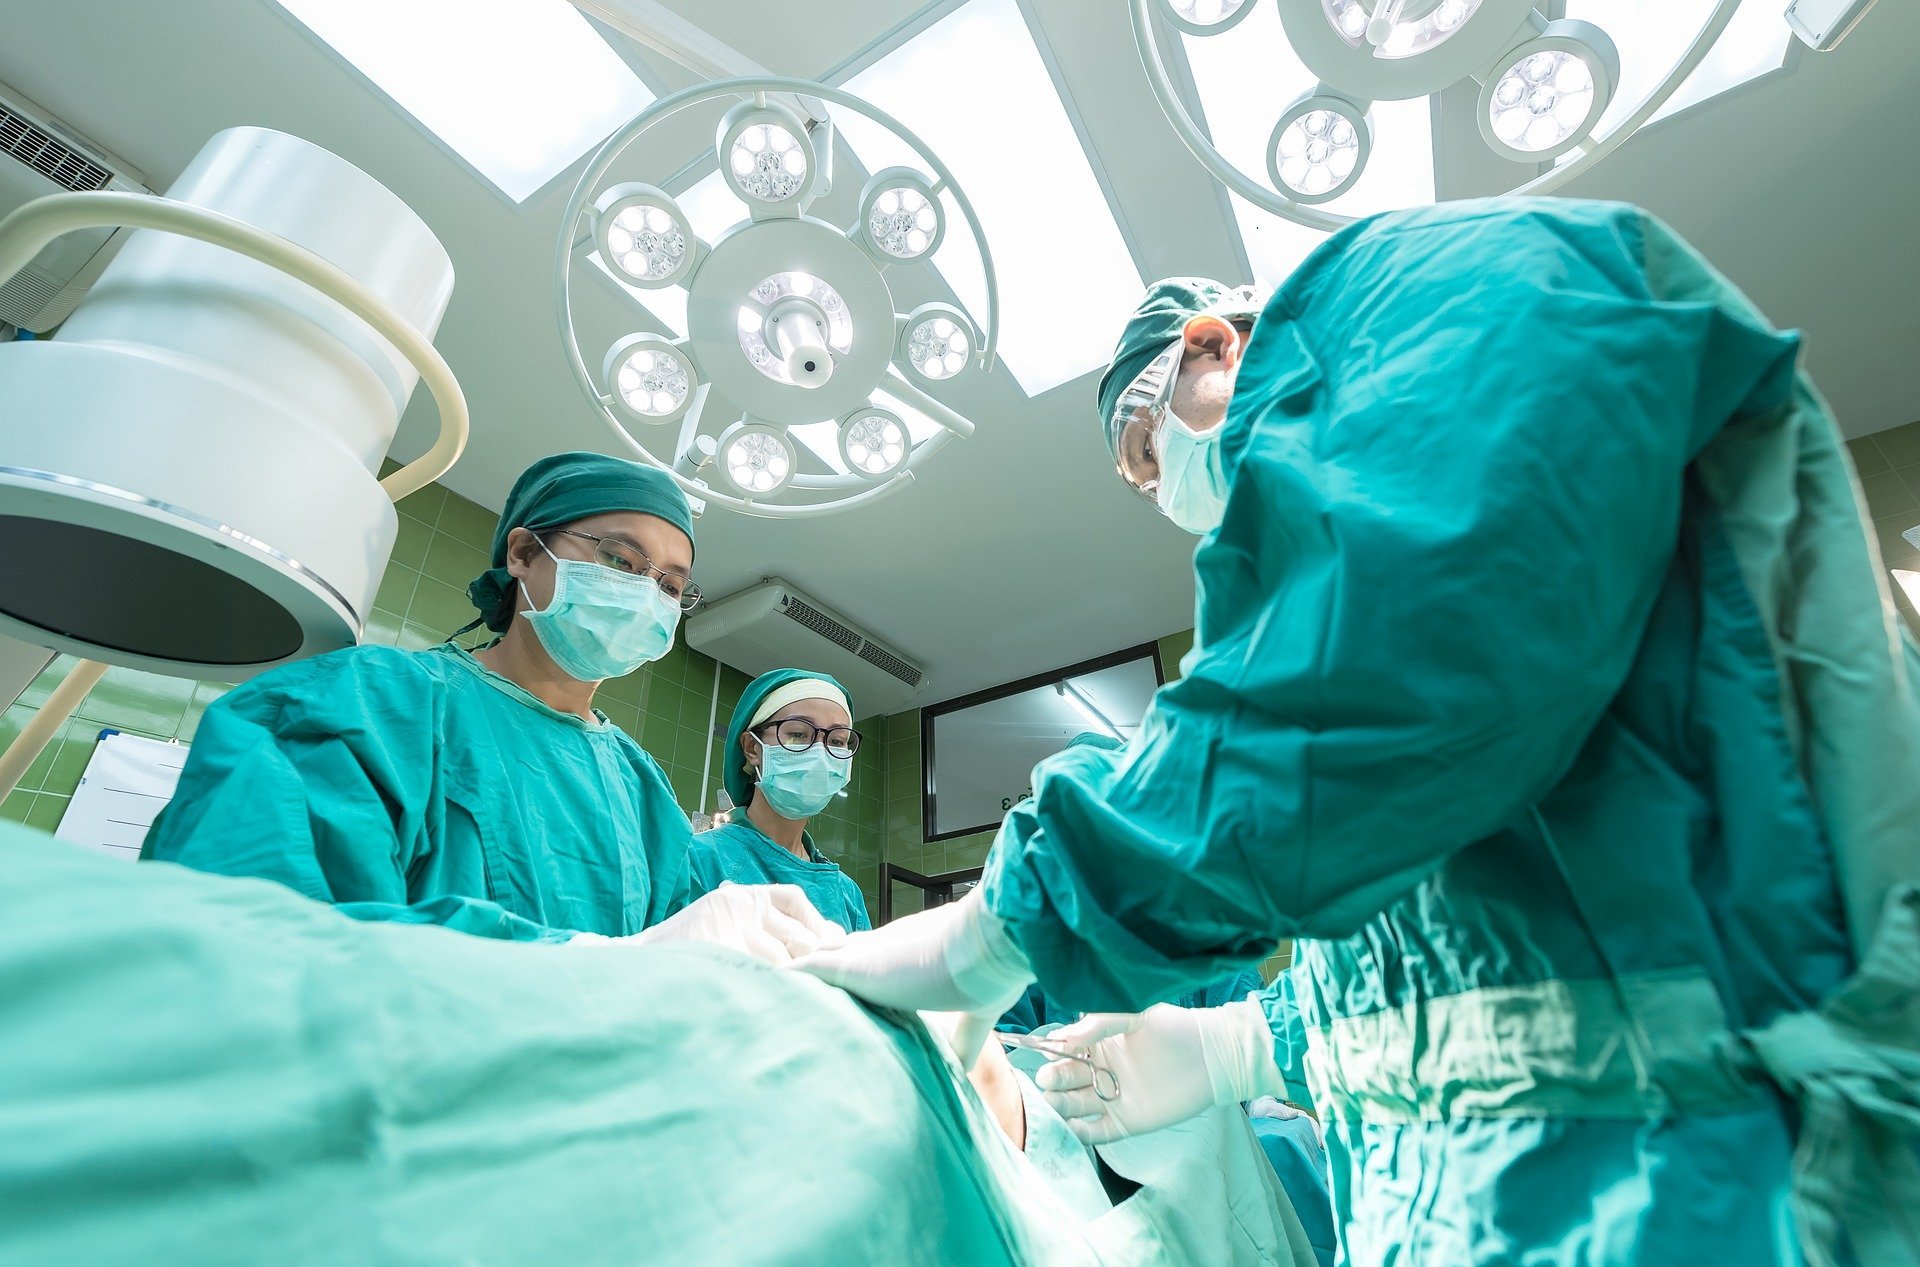 Doctors performing a procedure | Source: Pixabay.com